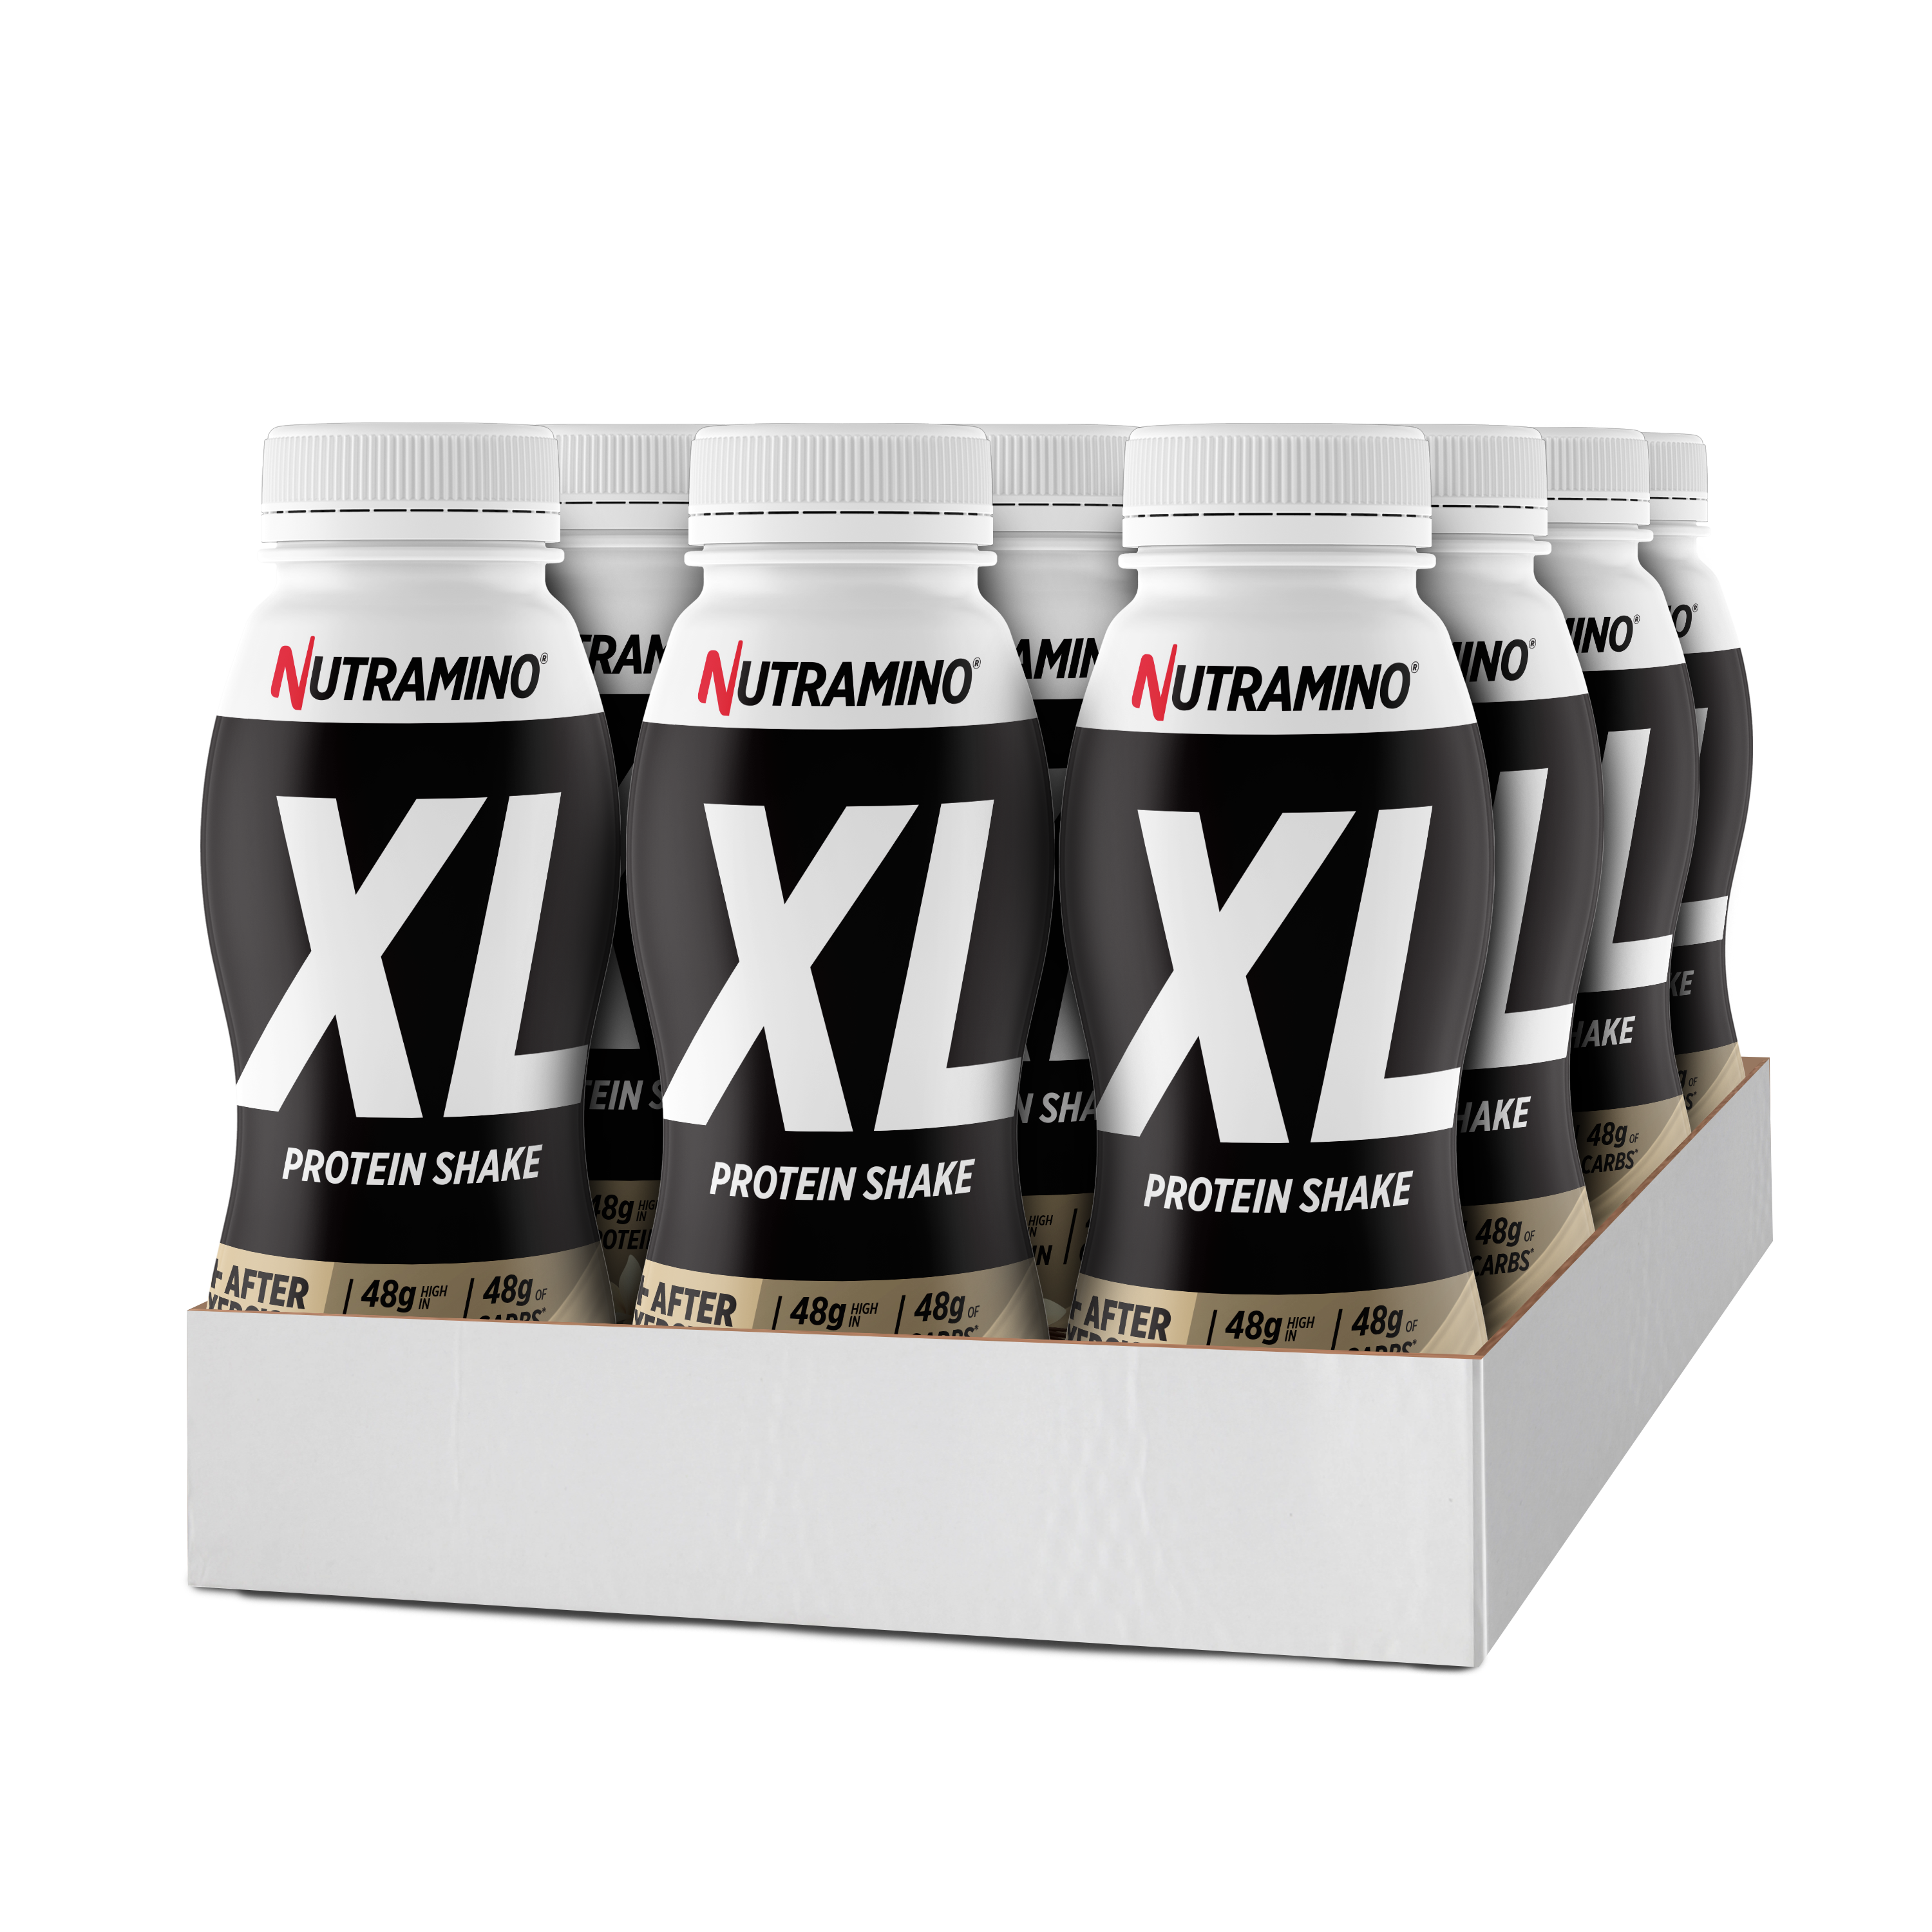 Brug Nutramino XL Protein Shake - Vanilla (12x 475ml) til en forbedret oplevelse